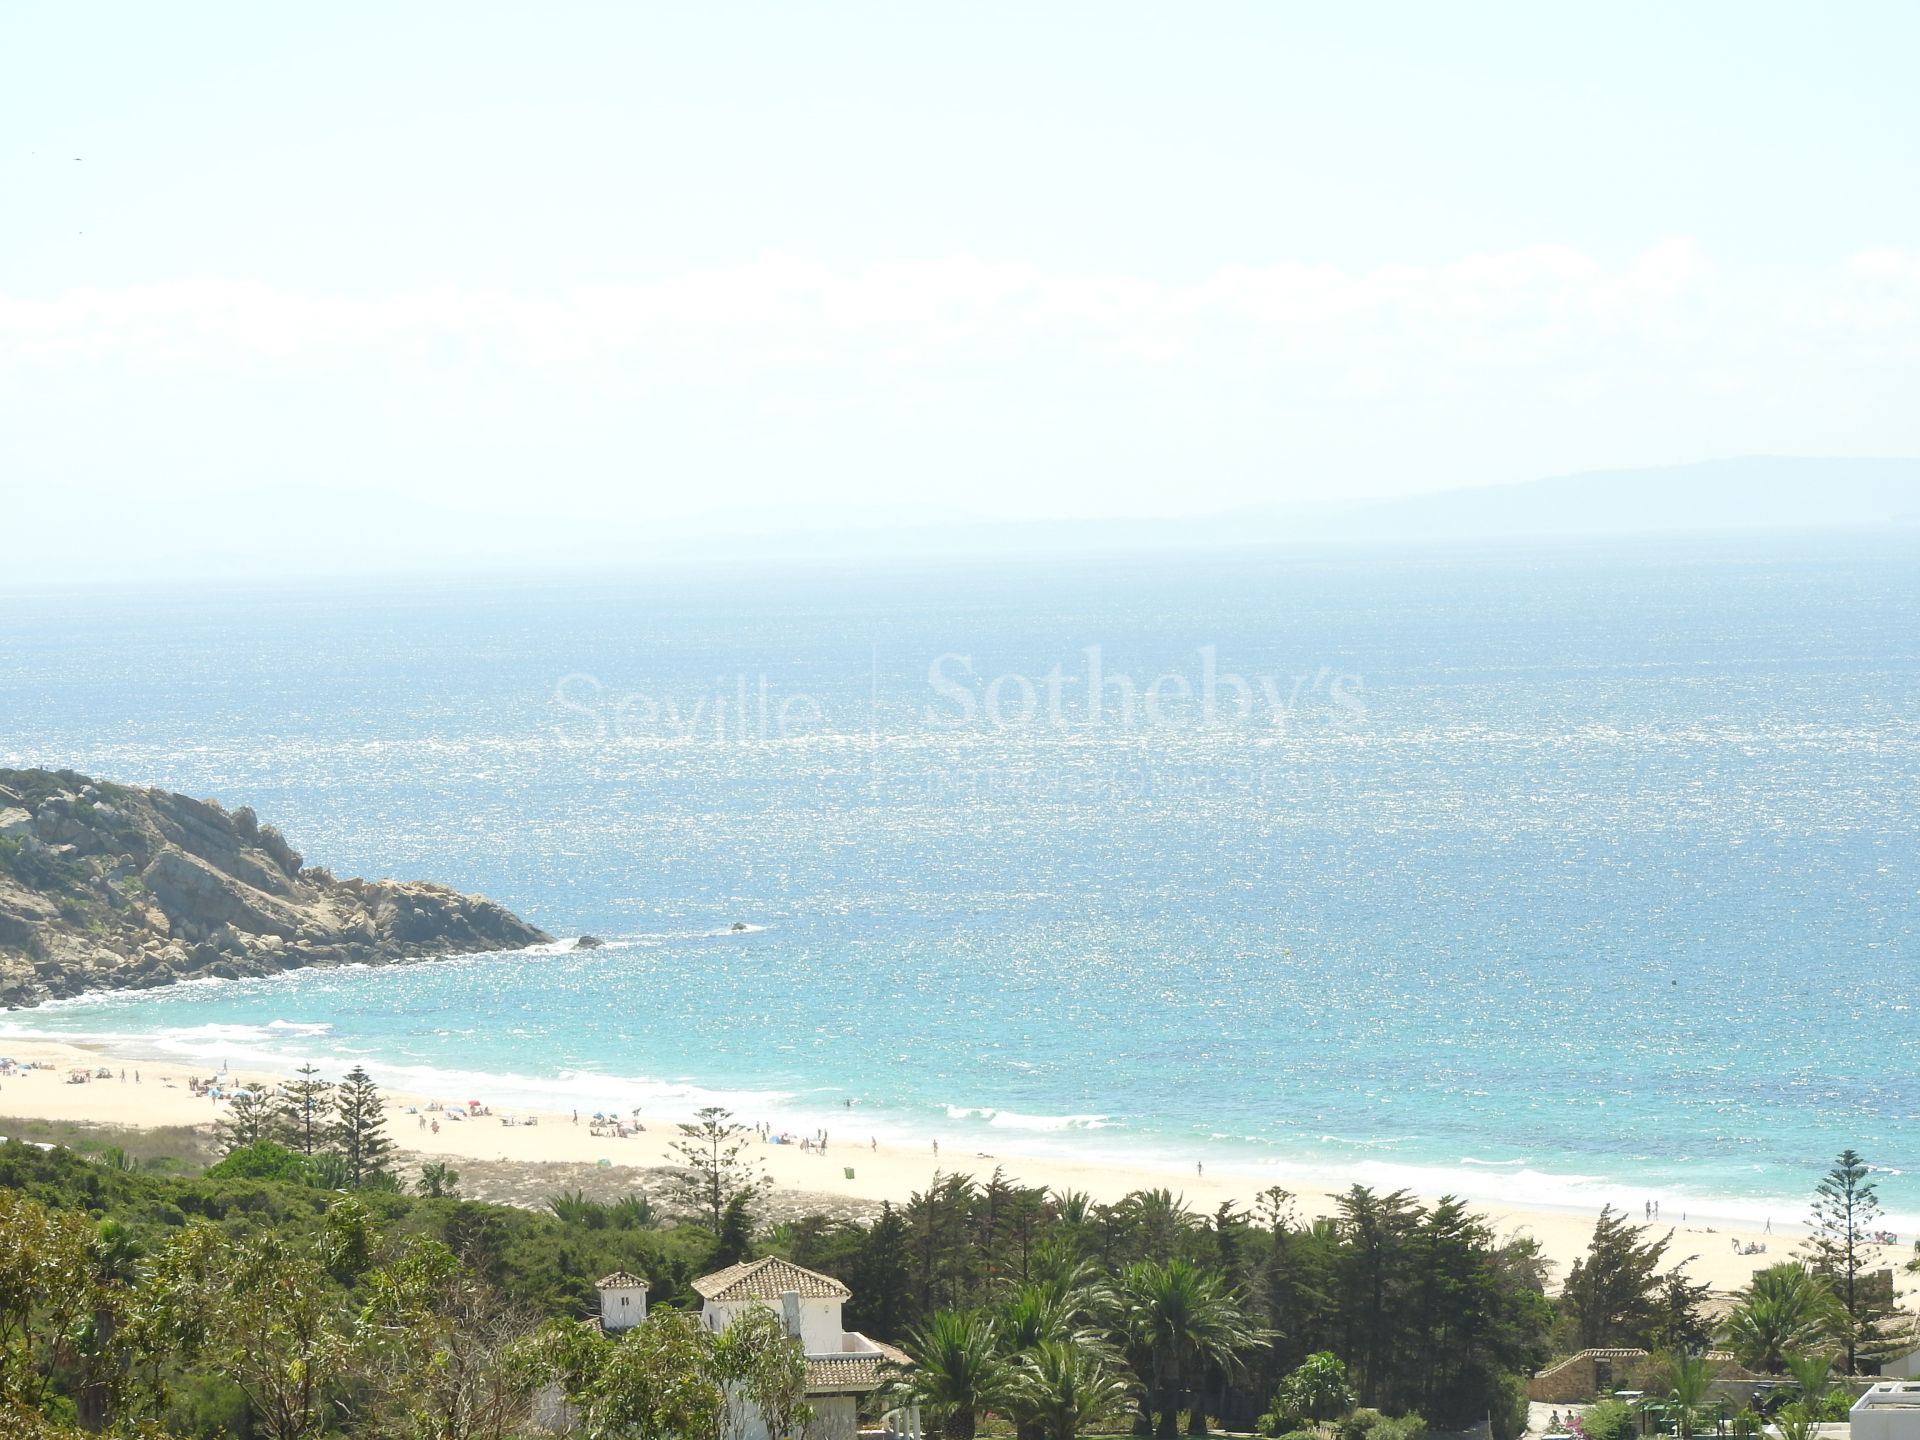 Parcela urbana a 500 metros de la playa con vistas al mar, en Zahara de los Atunes, Atlanterra.